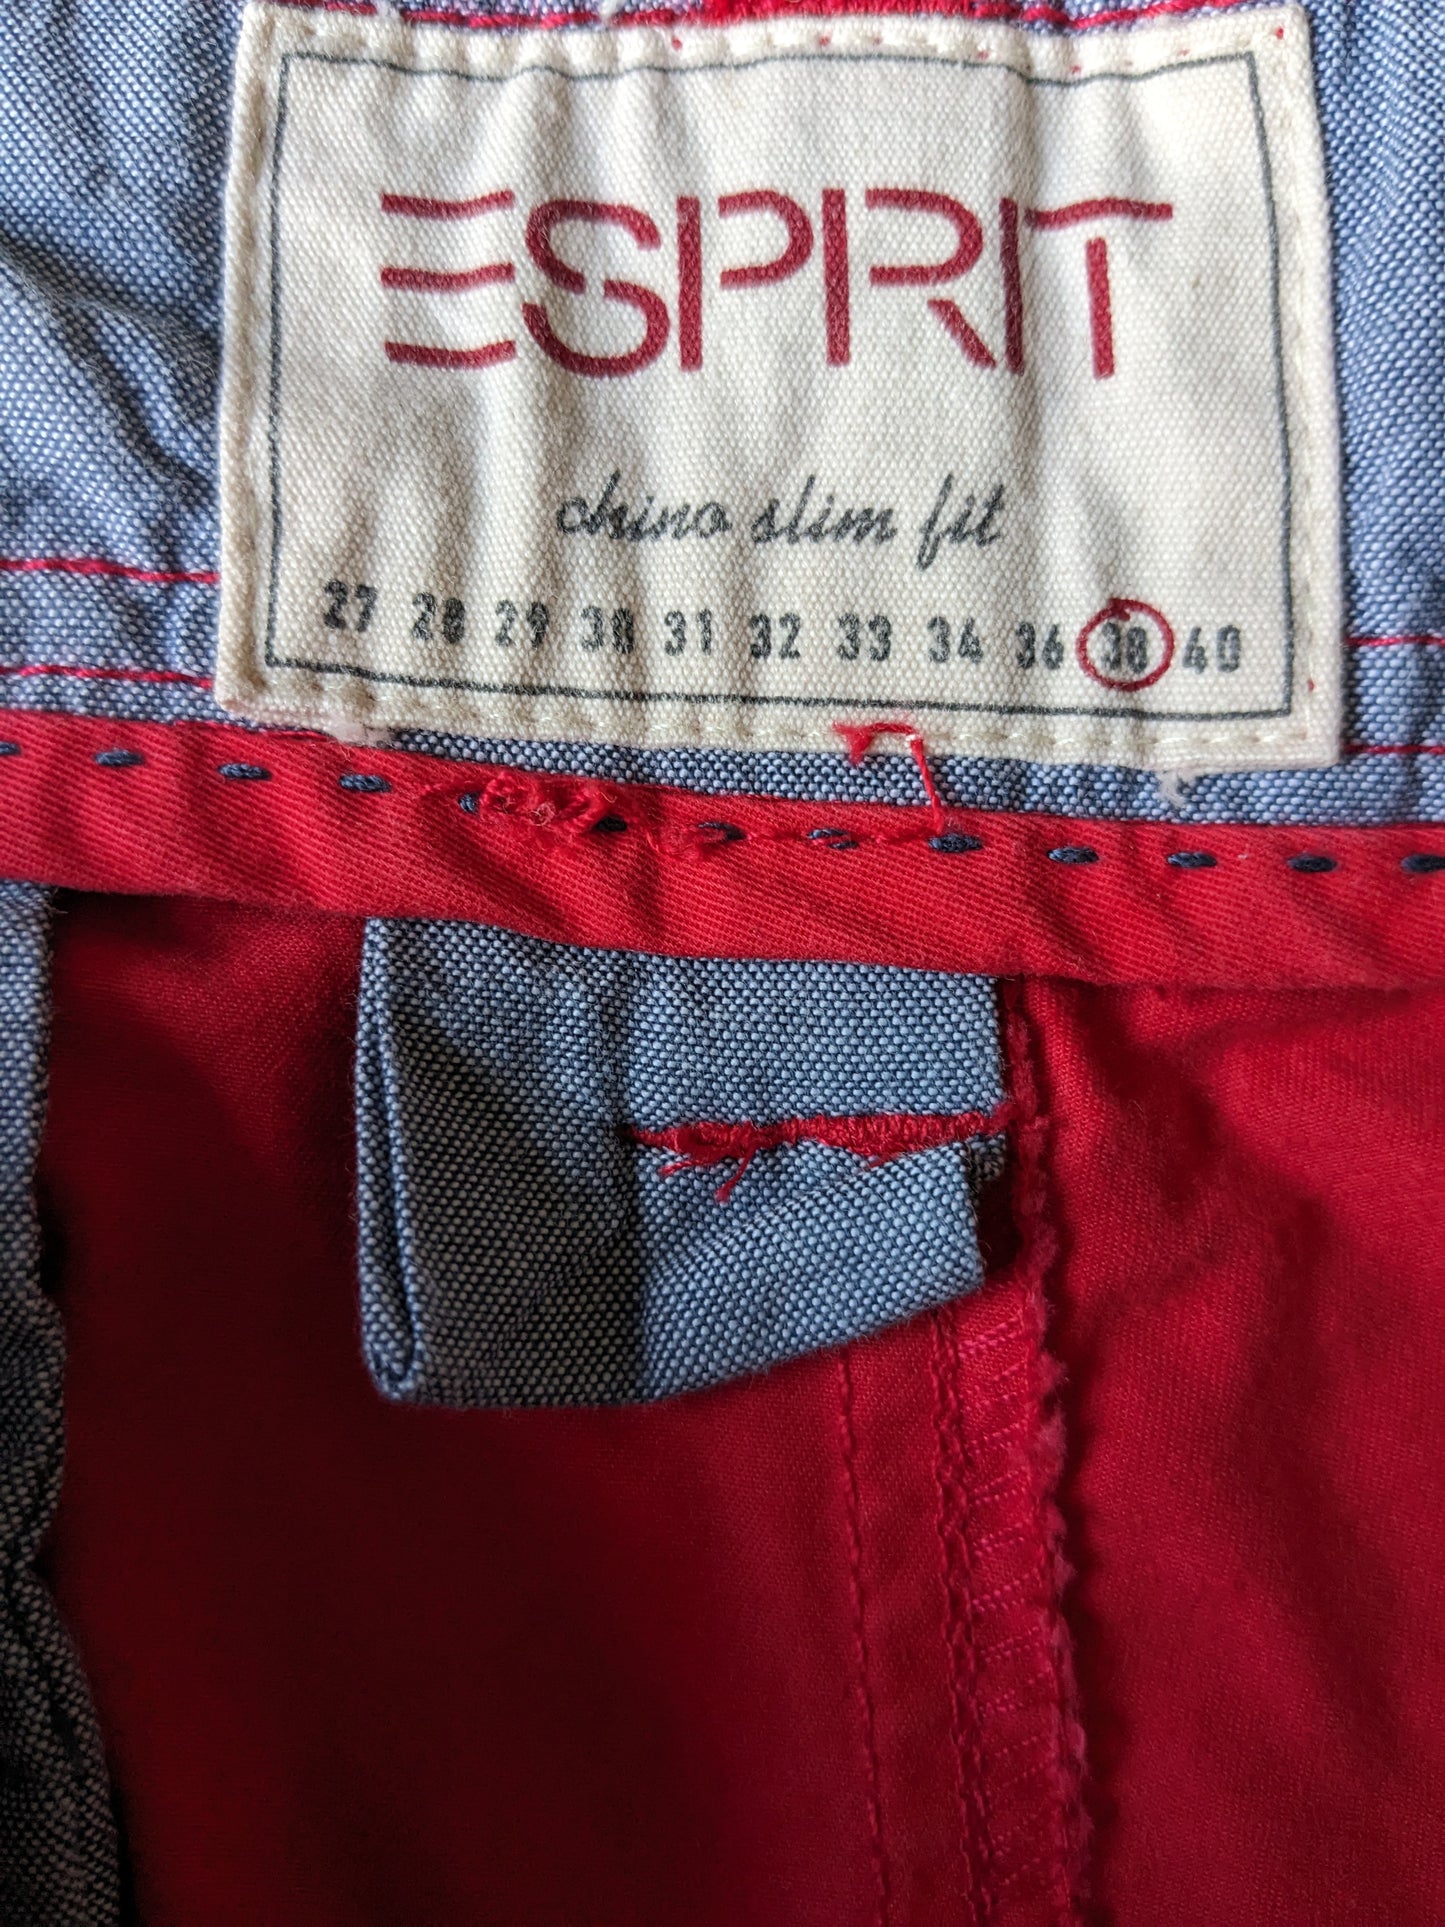 Esprit Chino Slim Fit broek. Rood gekleurd. Maat W38 - L34.